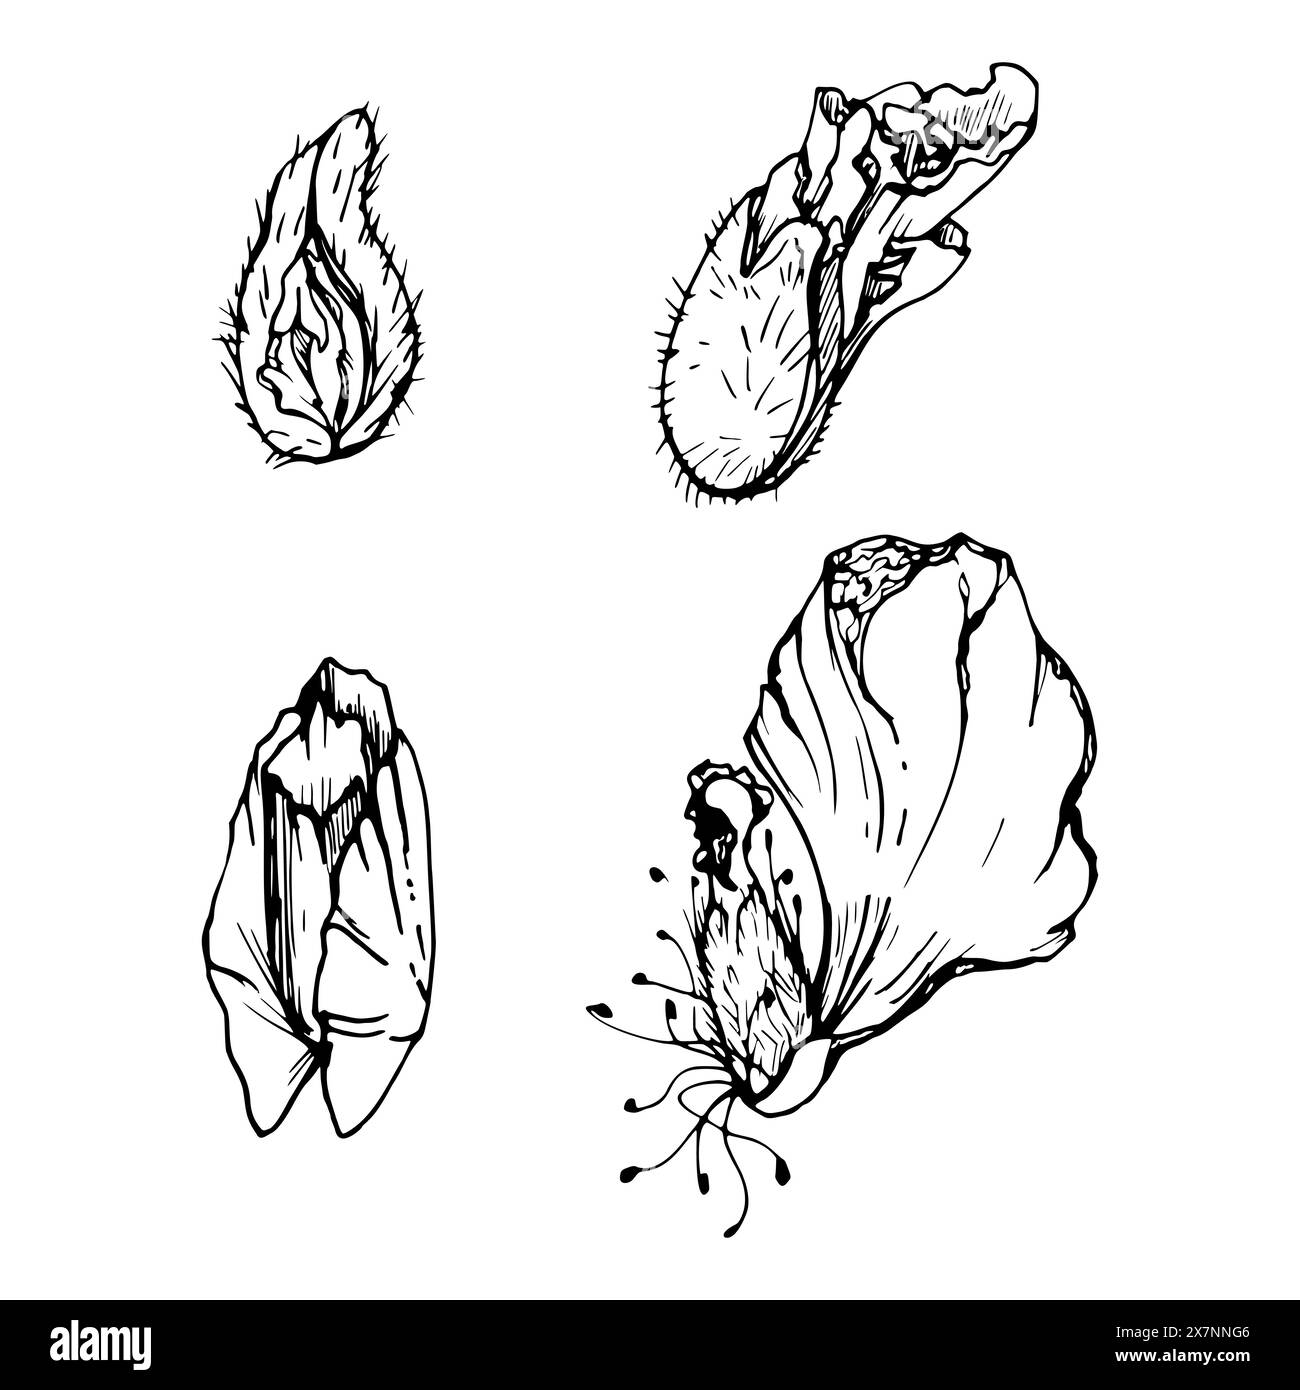 Set vettoriale di elementi con cialde di semi di papavero di peonia disegnate a mano, gemme. Isolato su sfondo bianco. Illustrazione grafica botanica. Inviti alla progettazione Illustrazione Vettoriale